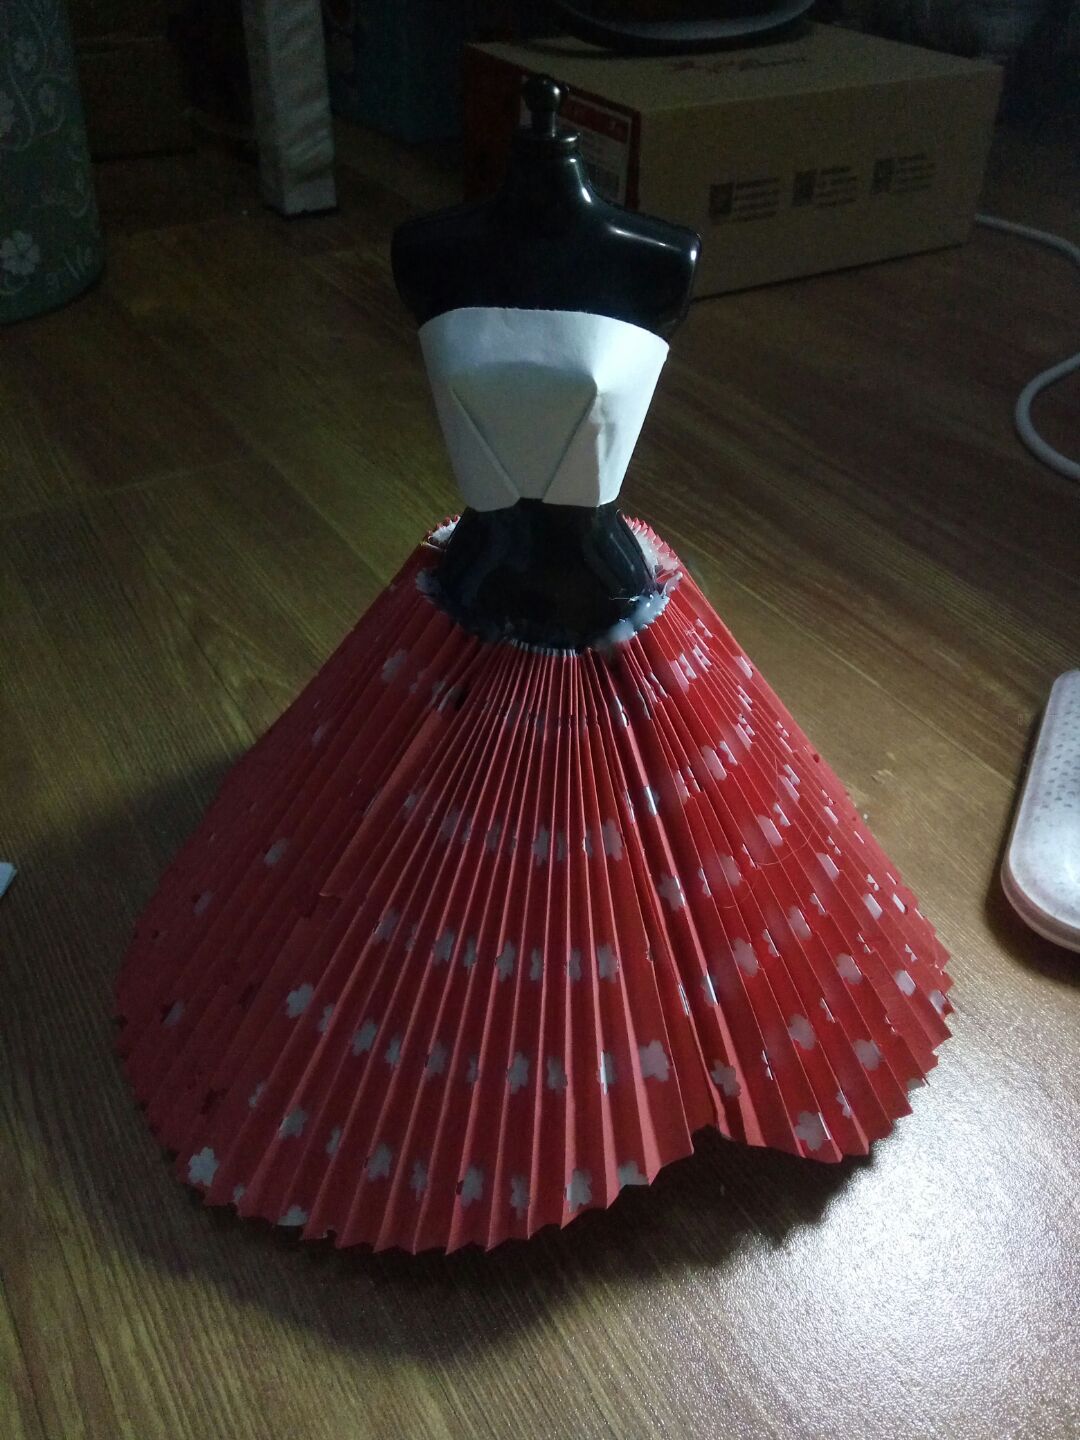 手工折纸DIY 纸婚纱之中国红复古欧式礼服简单折纸教程╭★肉丁网